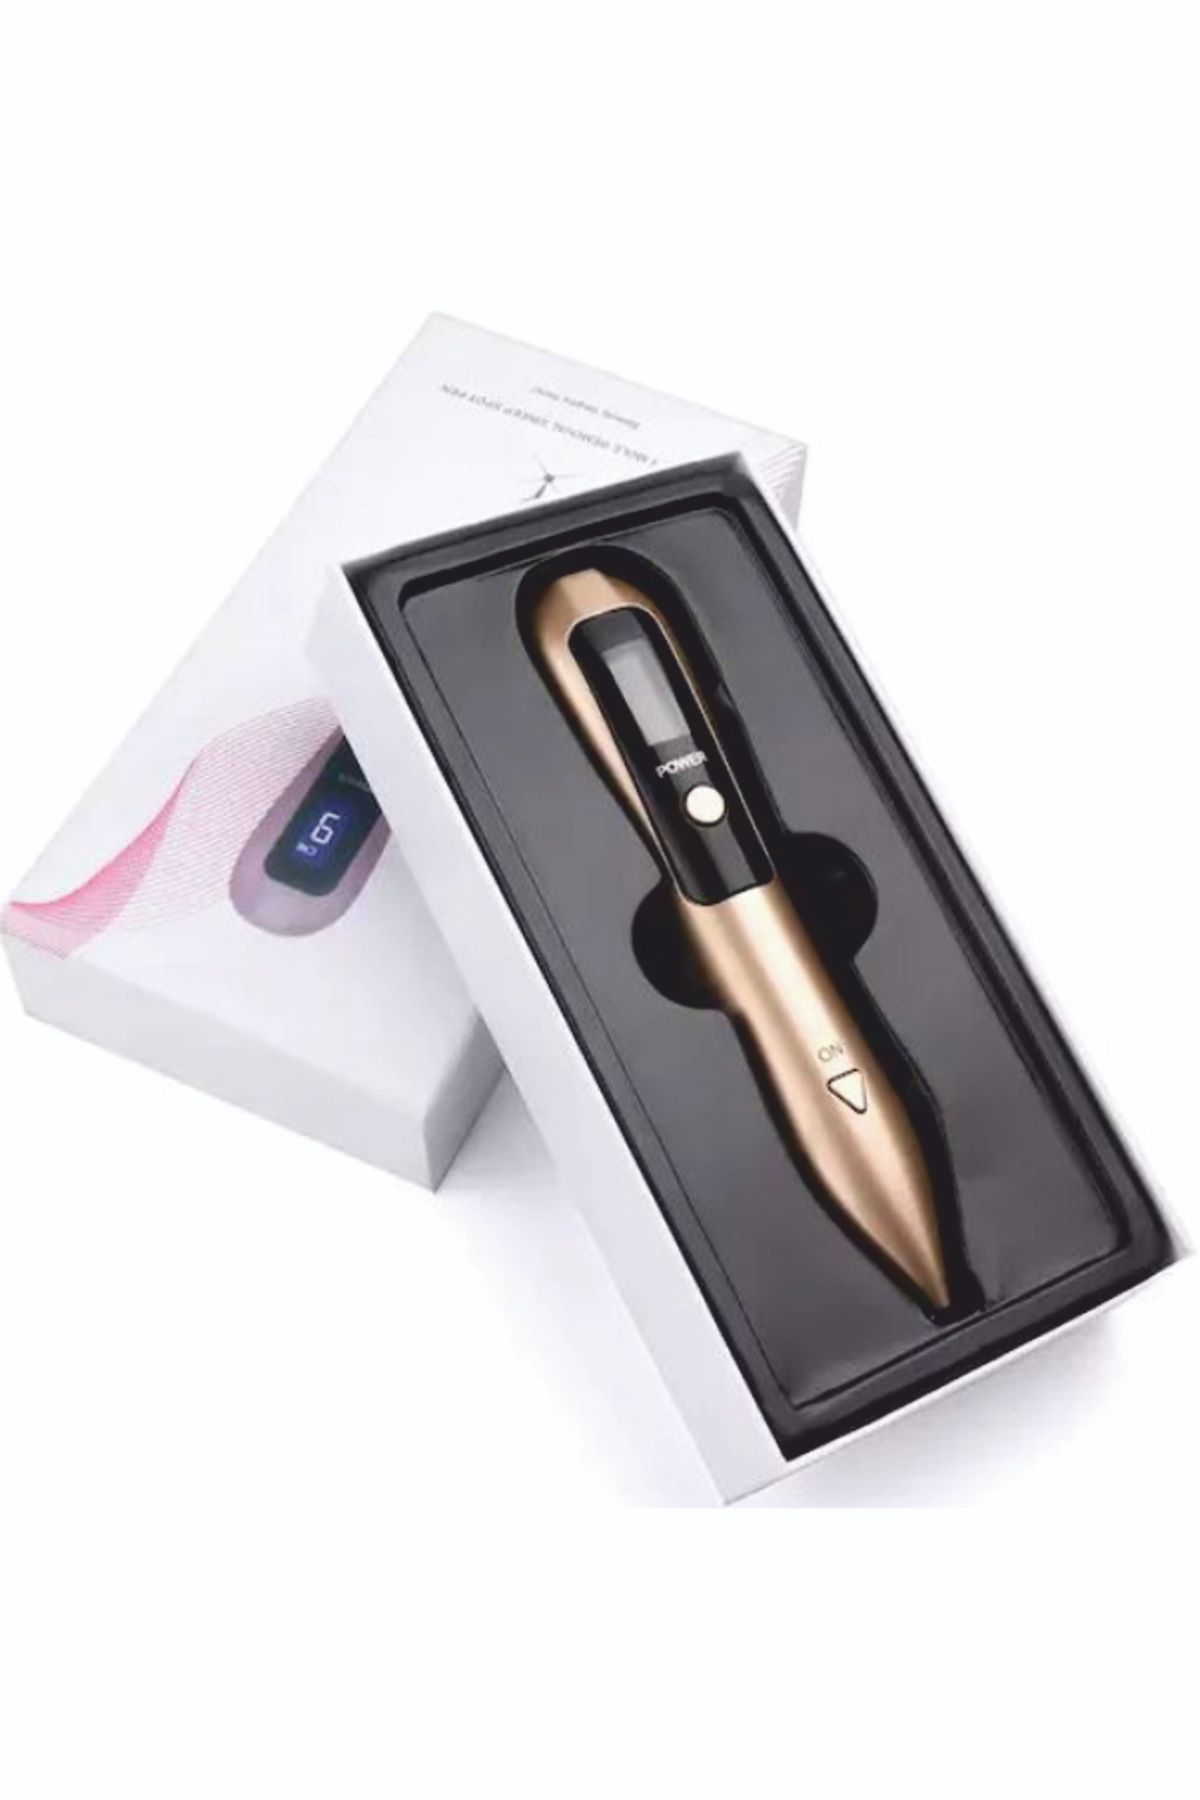 Nazalya Profesyonel 9 Kademe Dijital Laser Plazma Pen Gold Renk Ben, Siğil Ve Leke Cihazı